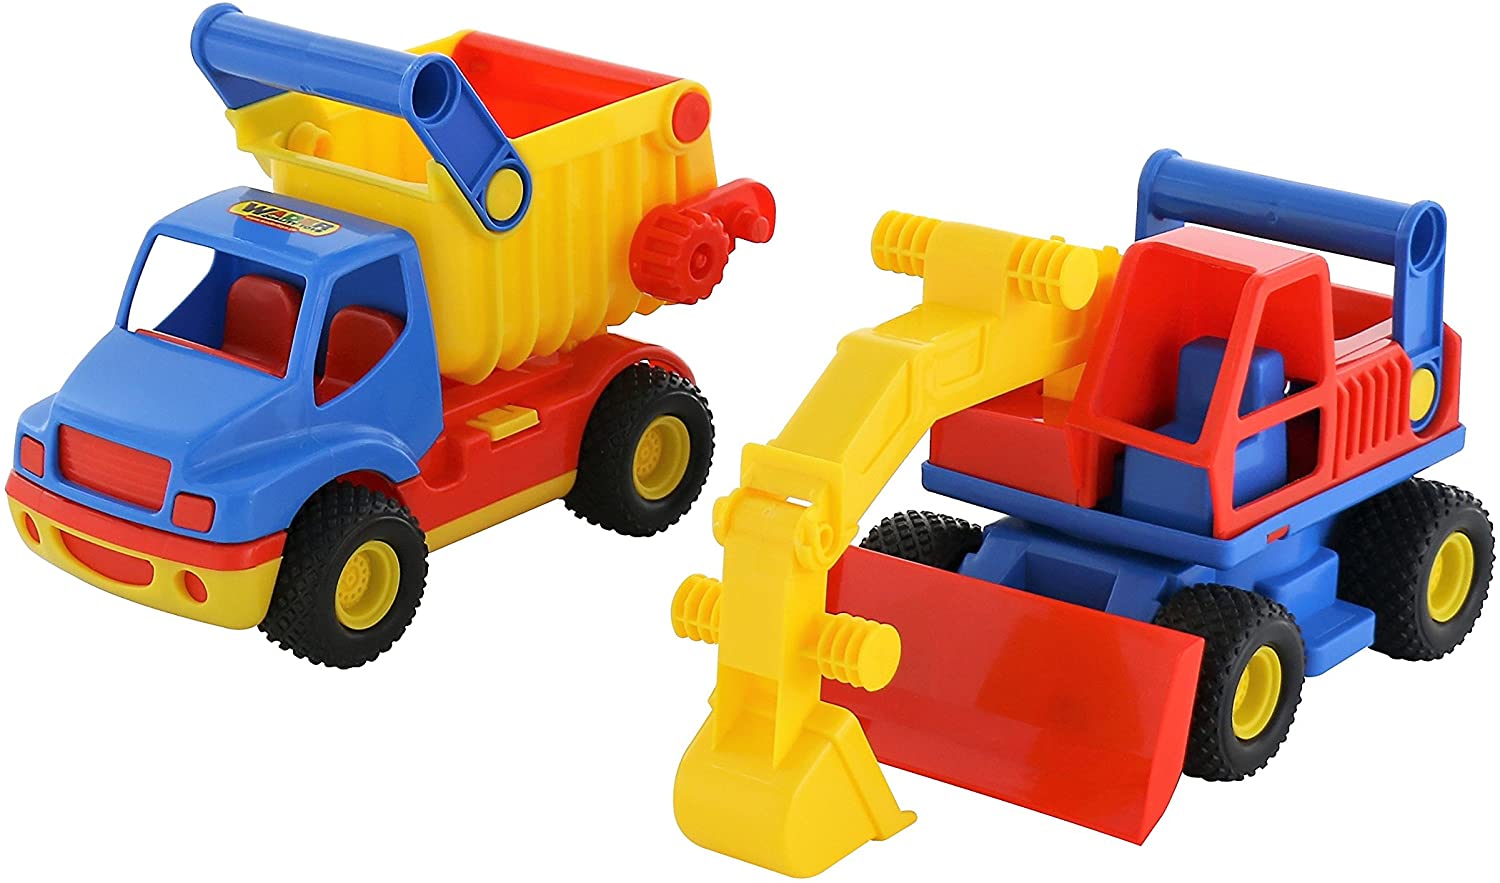 Polesie 0452 Construck Truck Truck And Excavator Toy